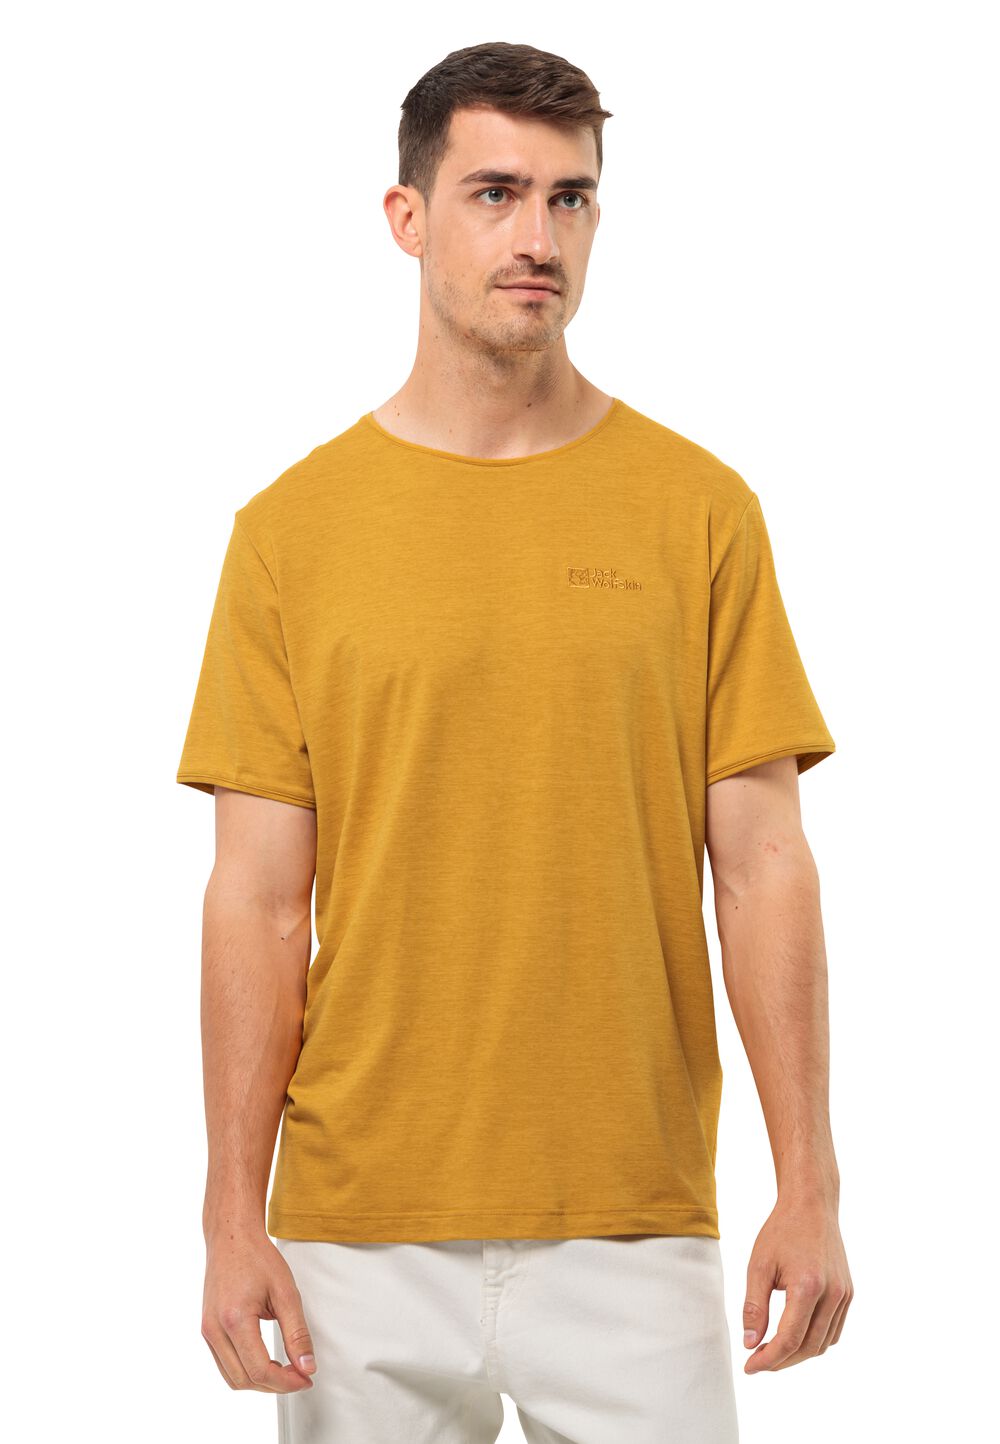 Jack Wolfskin Travel T-Shirt Men Functioneel shirt Heren XL bruin curry